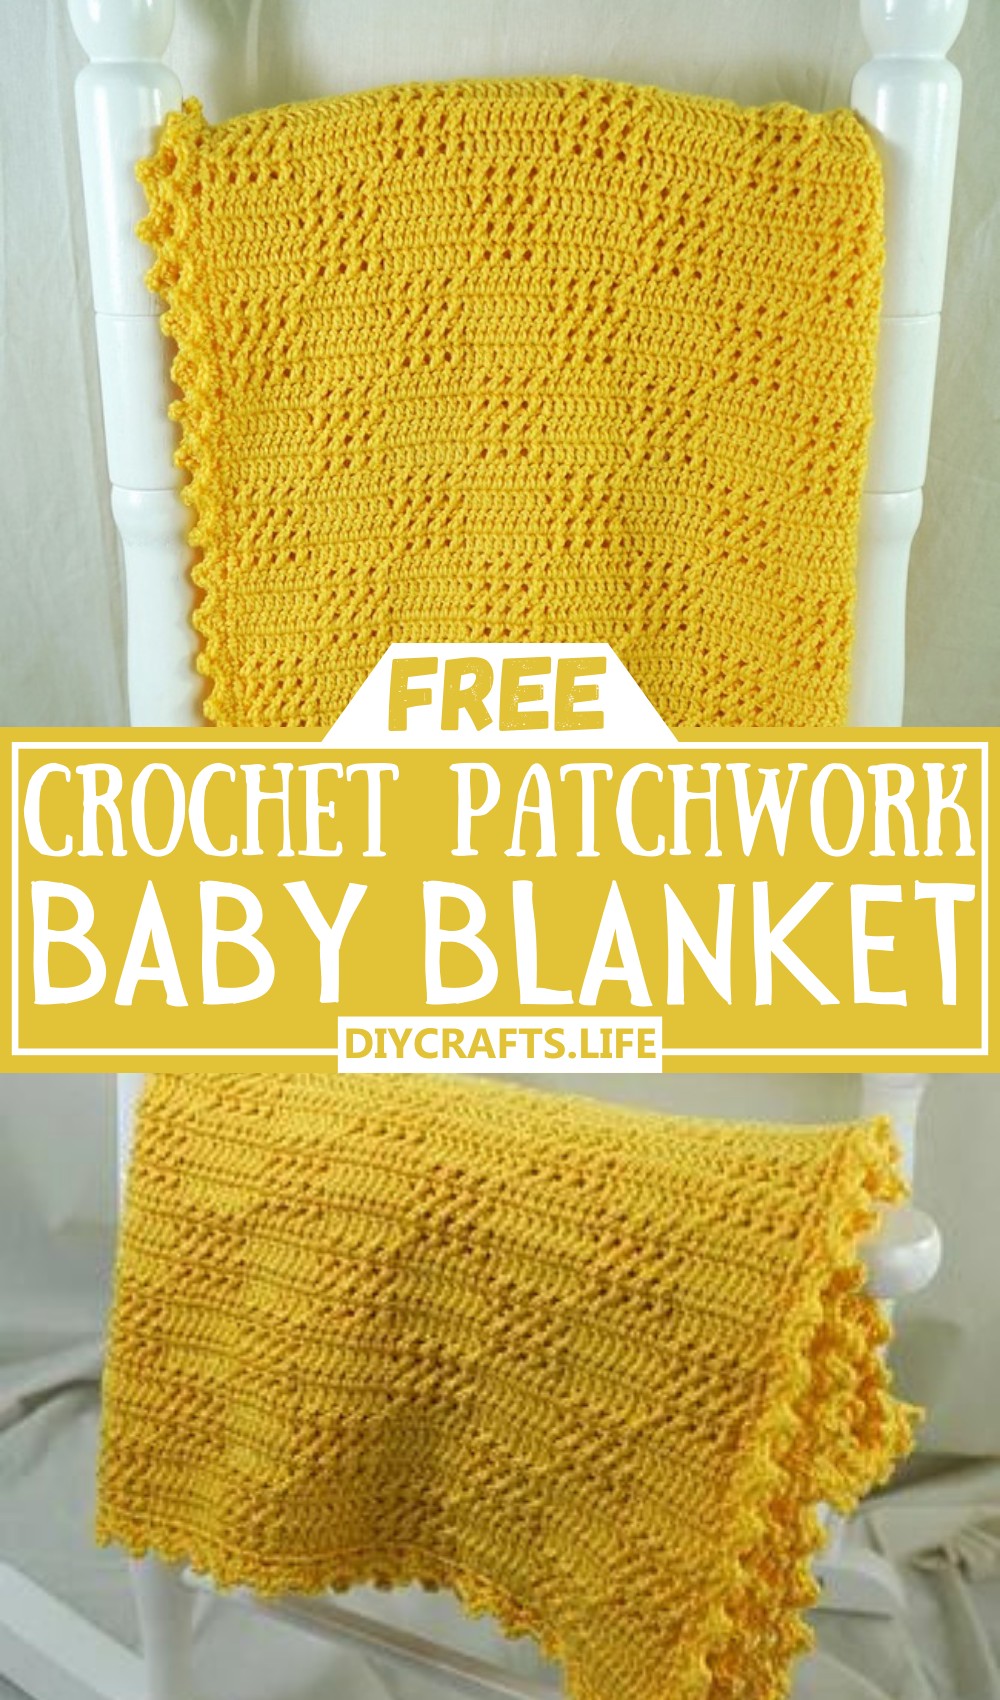 Crochet Patchwork Baby Blanket